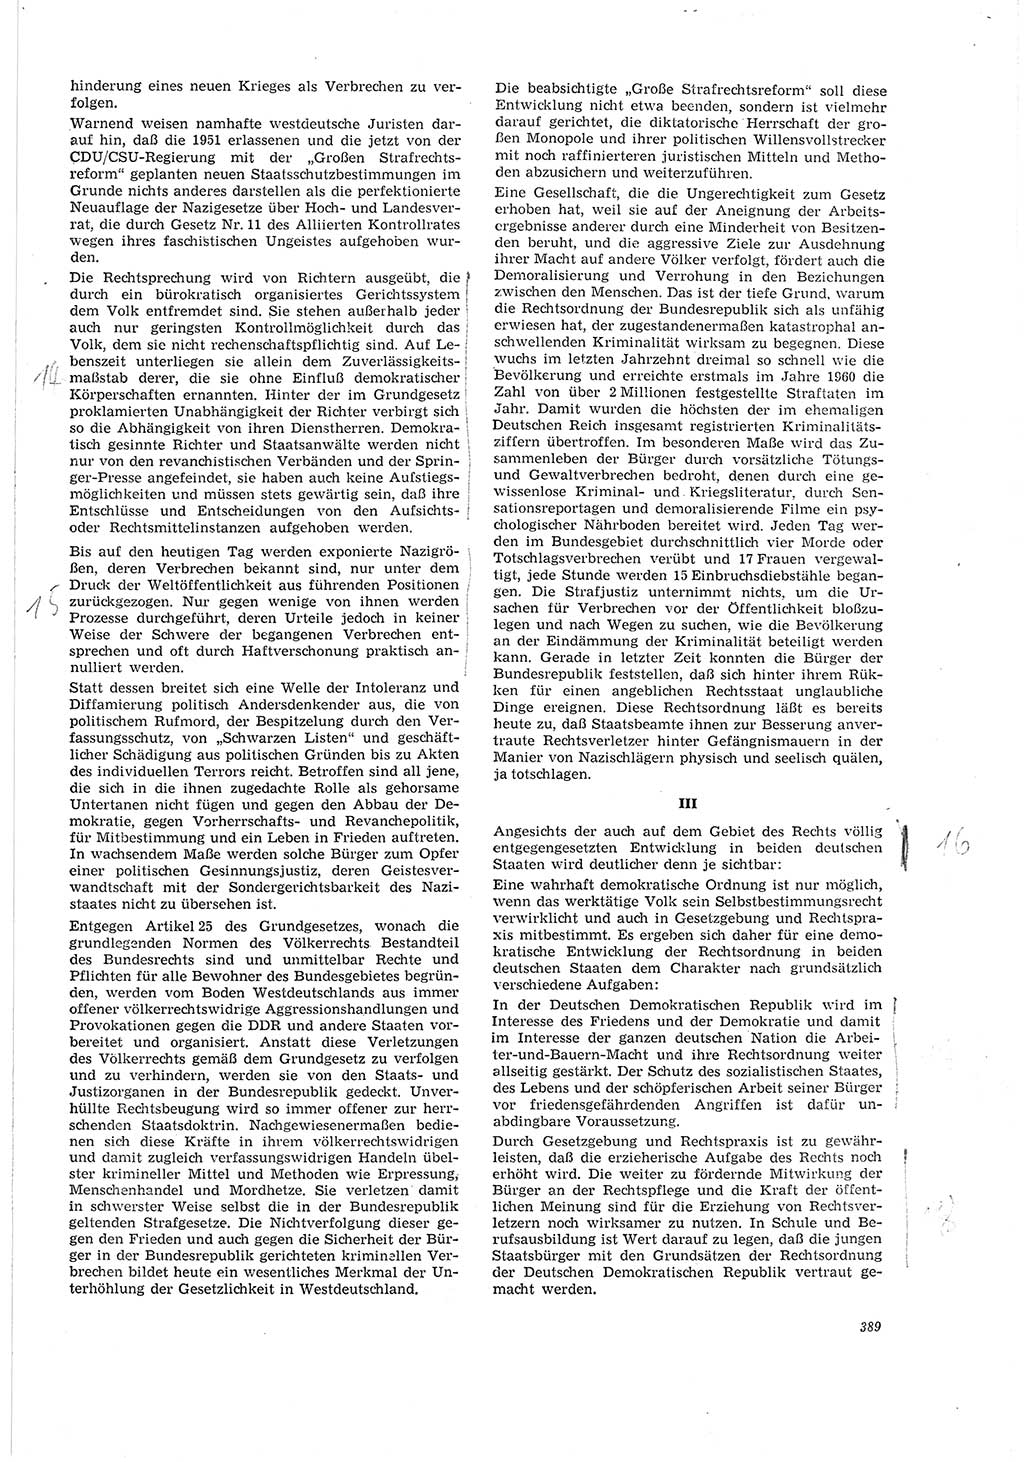 Neue Justiz (NJ), Zeitschrift für Recht und Rechtswissenschaft [Deutsche Demokratische Republik (DDR)], 20. Jahrgang 1966, Seite 389 (NJ DDR 1966, S. 389)